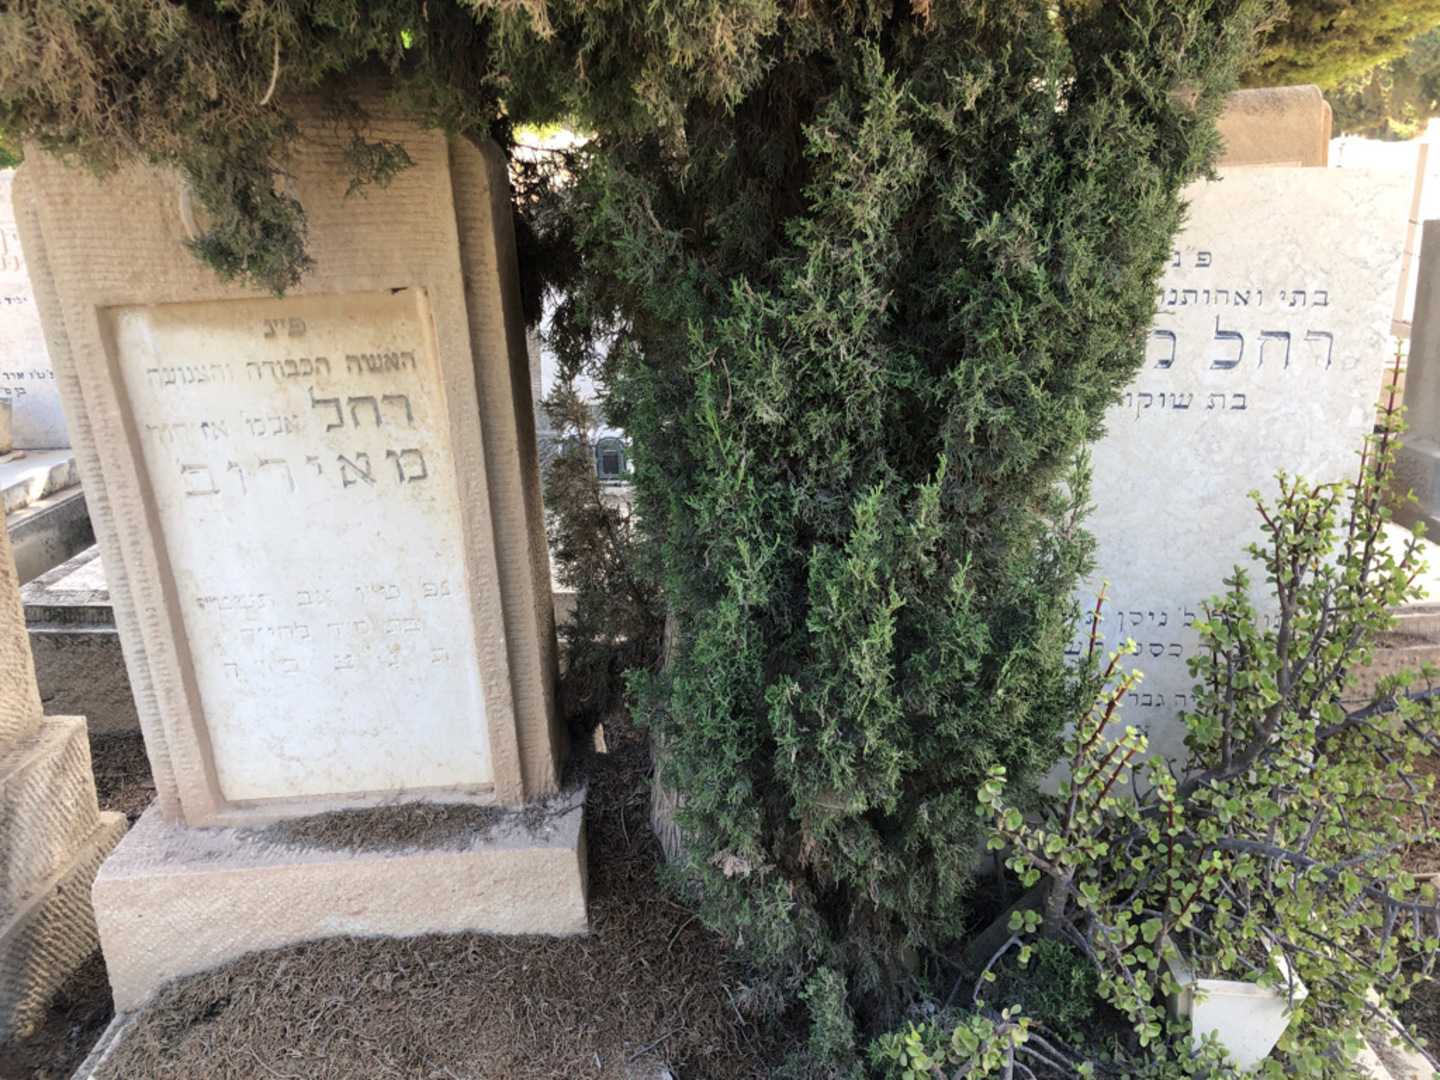 קברו של רחל מאירוב. תמונה 2